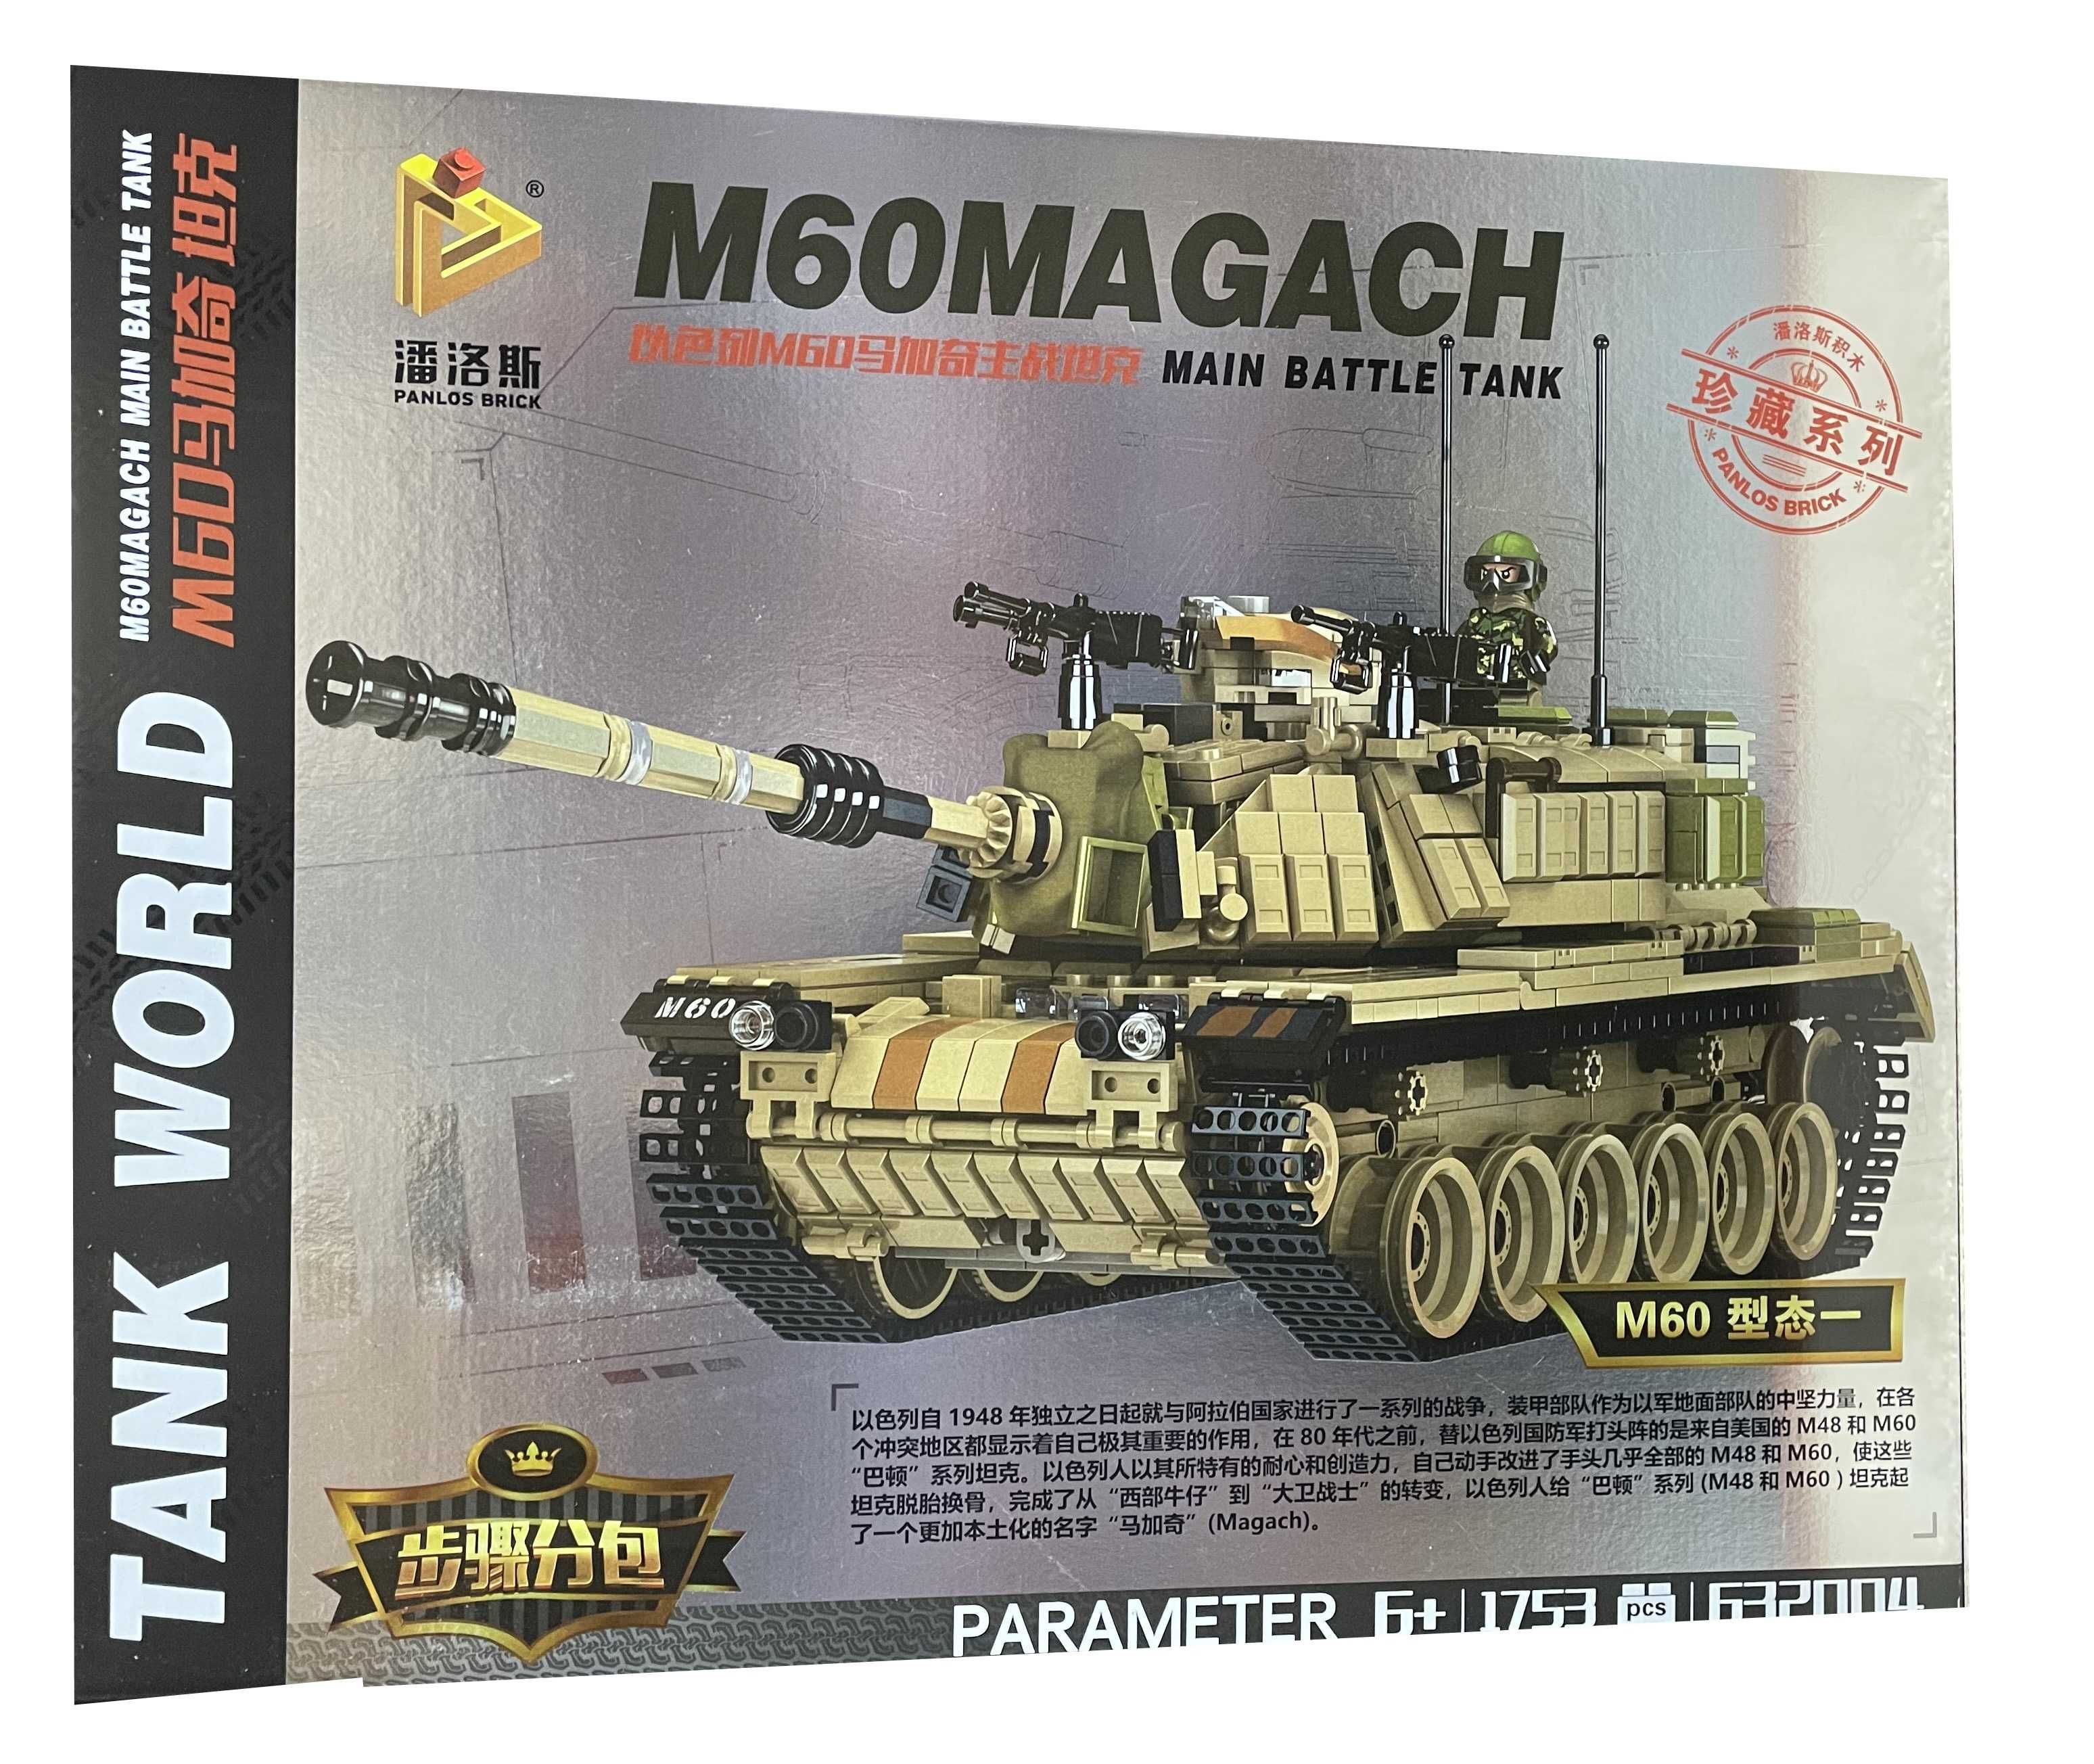 Klocki czołg wojskowy M60 MAGACH jak Lego z Polski